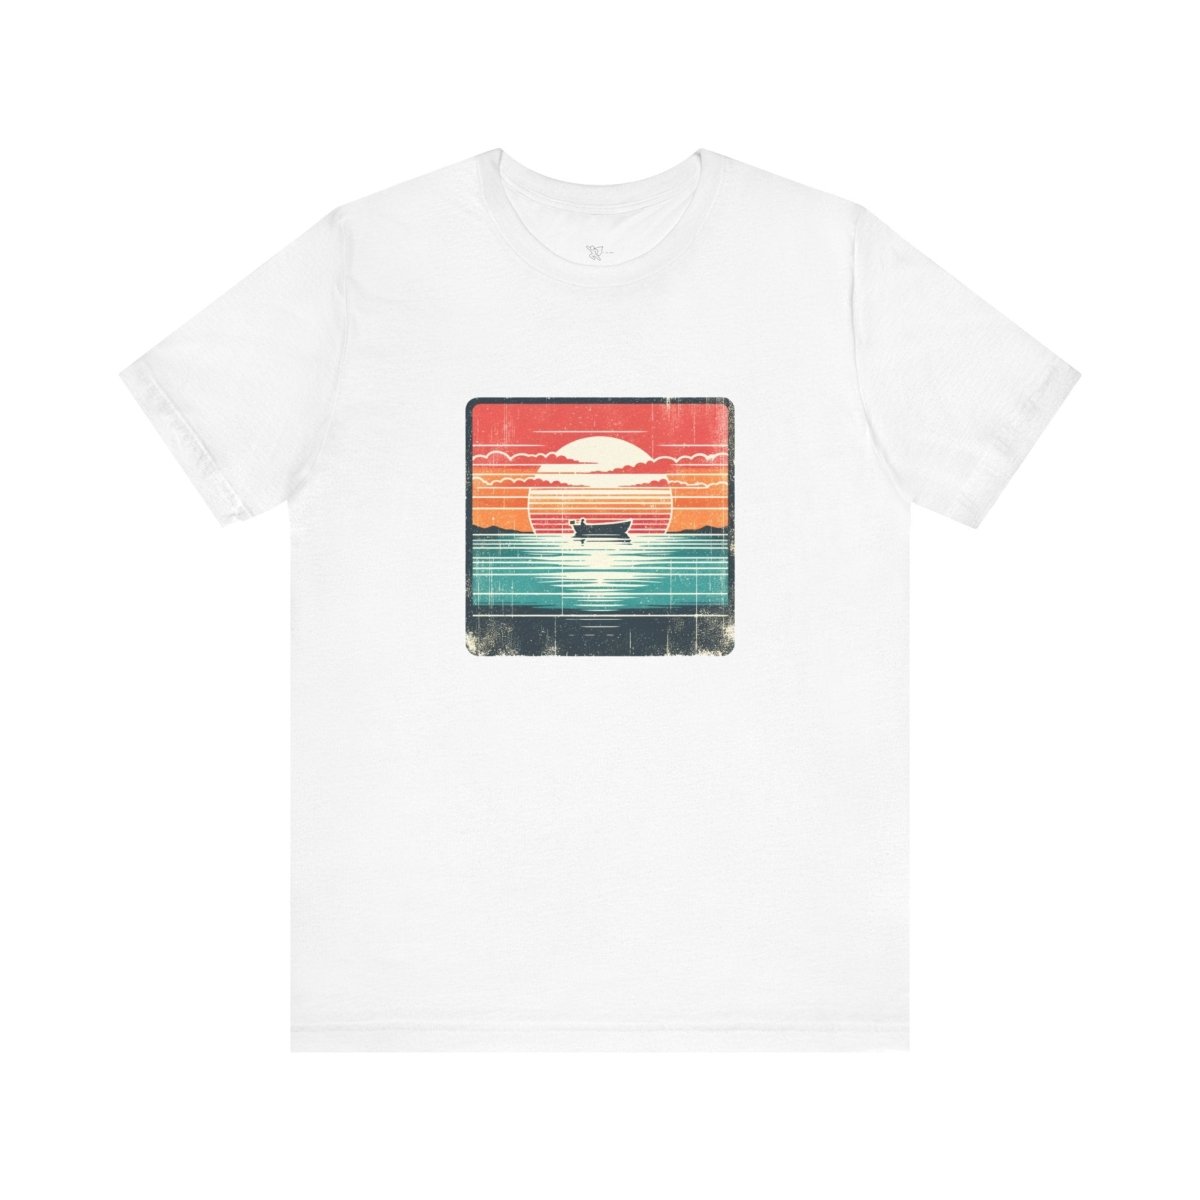 Serenity Seascape Sunrise - Unisex Short Sleeve Tee - AI Tee Hero